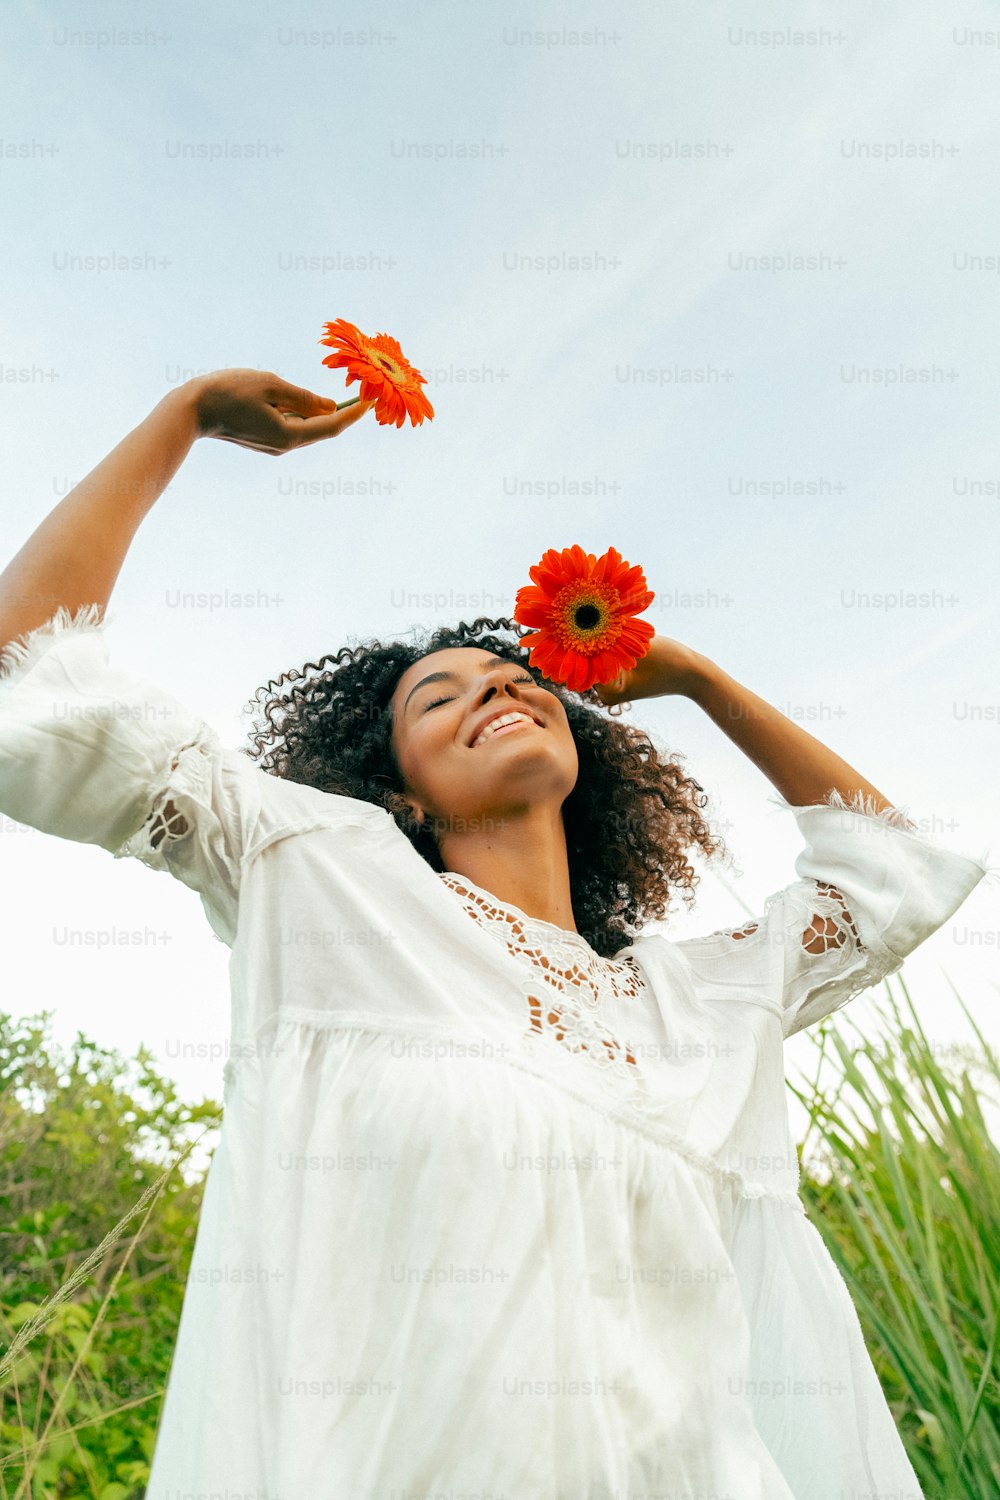 una mujer con un vestido blanco sosteniendo una flor roja